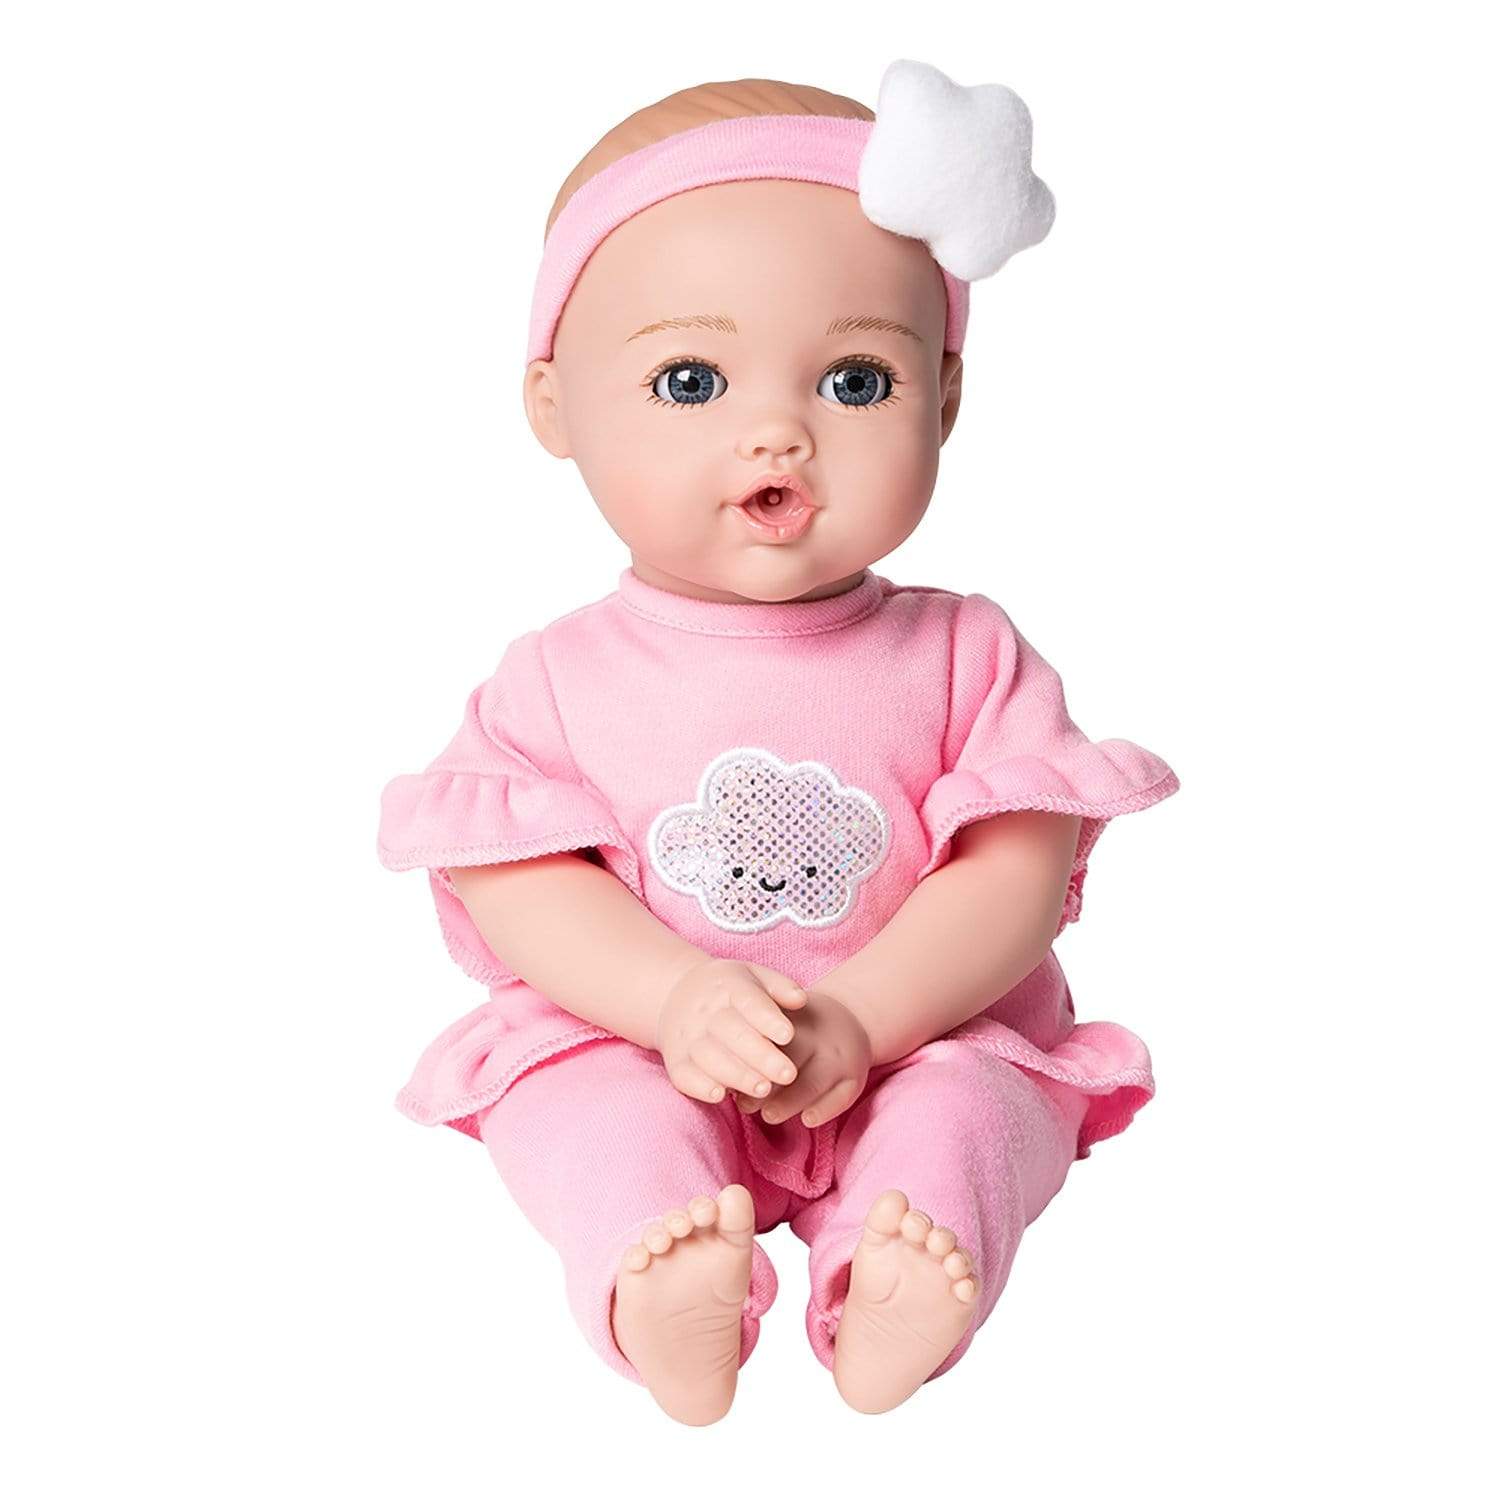 Adora 13 inch Cry Baby Doll NurtureTime Baby Soft Pink Open/Close eyes